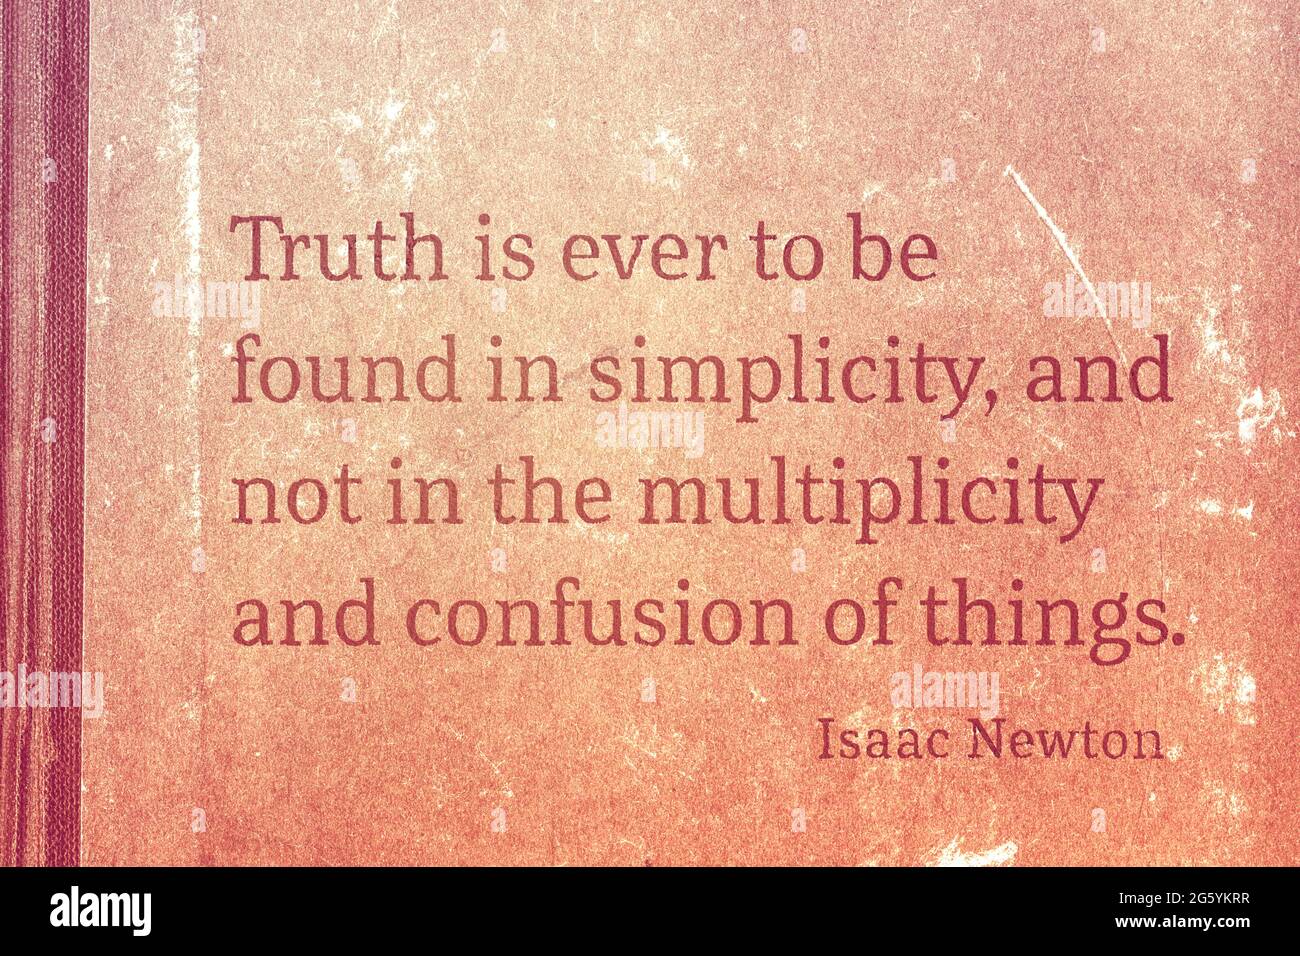 La verdad se encuentra siempre en la simplicidad - famoso físico inglés y matemático Sir Isaac Newton cita impresa en cartón vintage Foto de stock